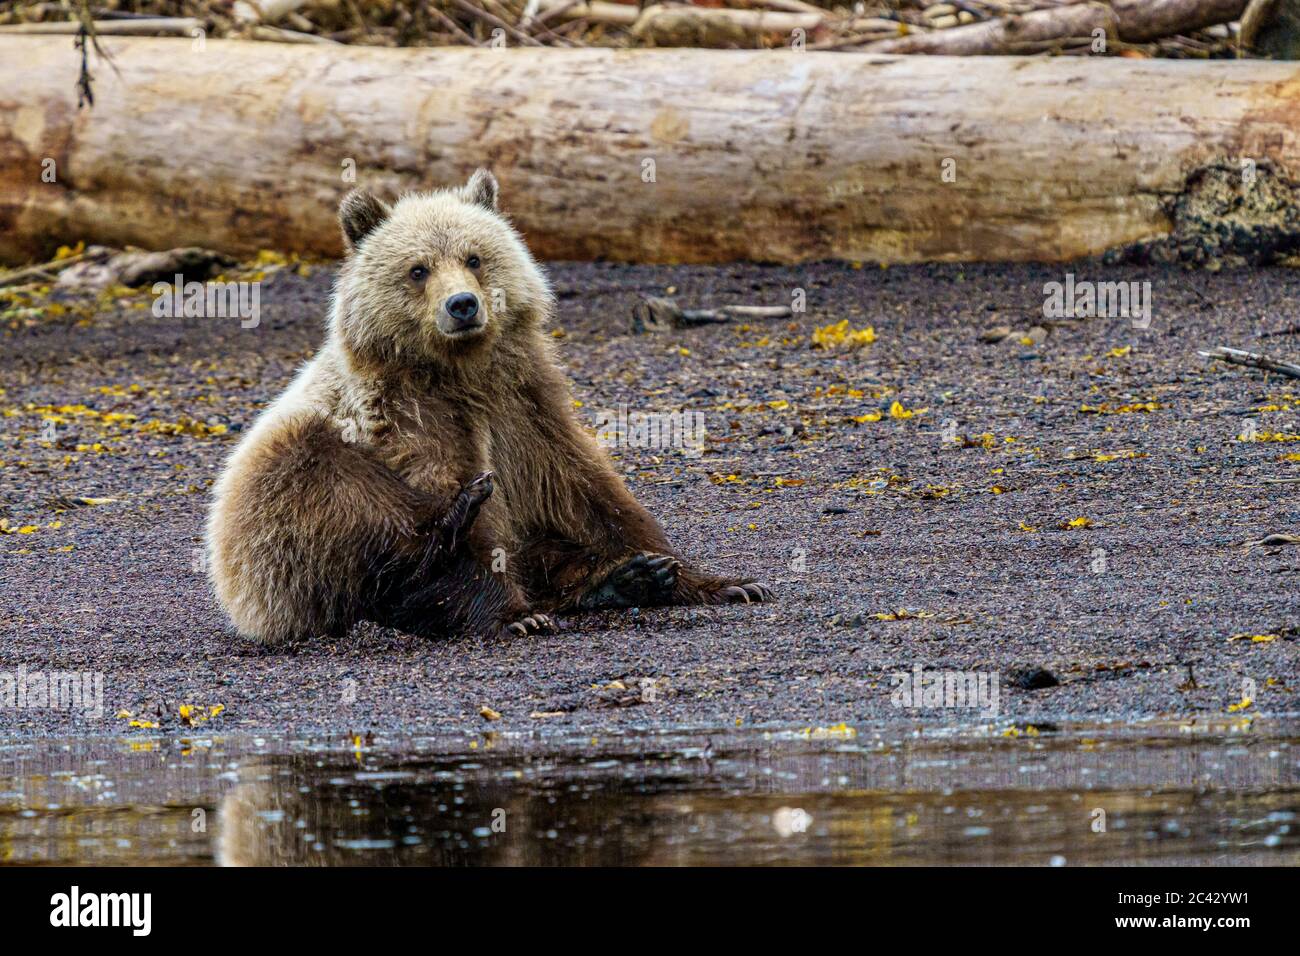 le petit-ours grizzli est assis et se grattant le long du rivage à Glendale Cove, territoire des Premières nations, Colombie-Britannique, Canada. Banque D'Images